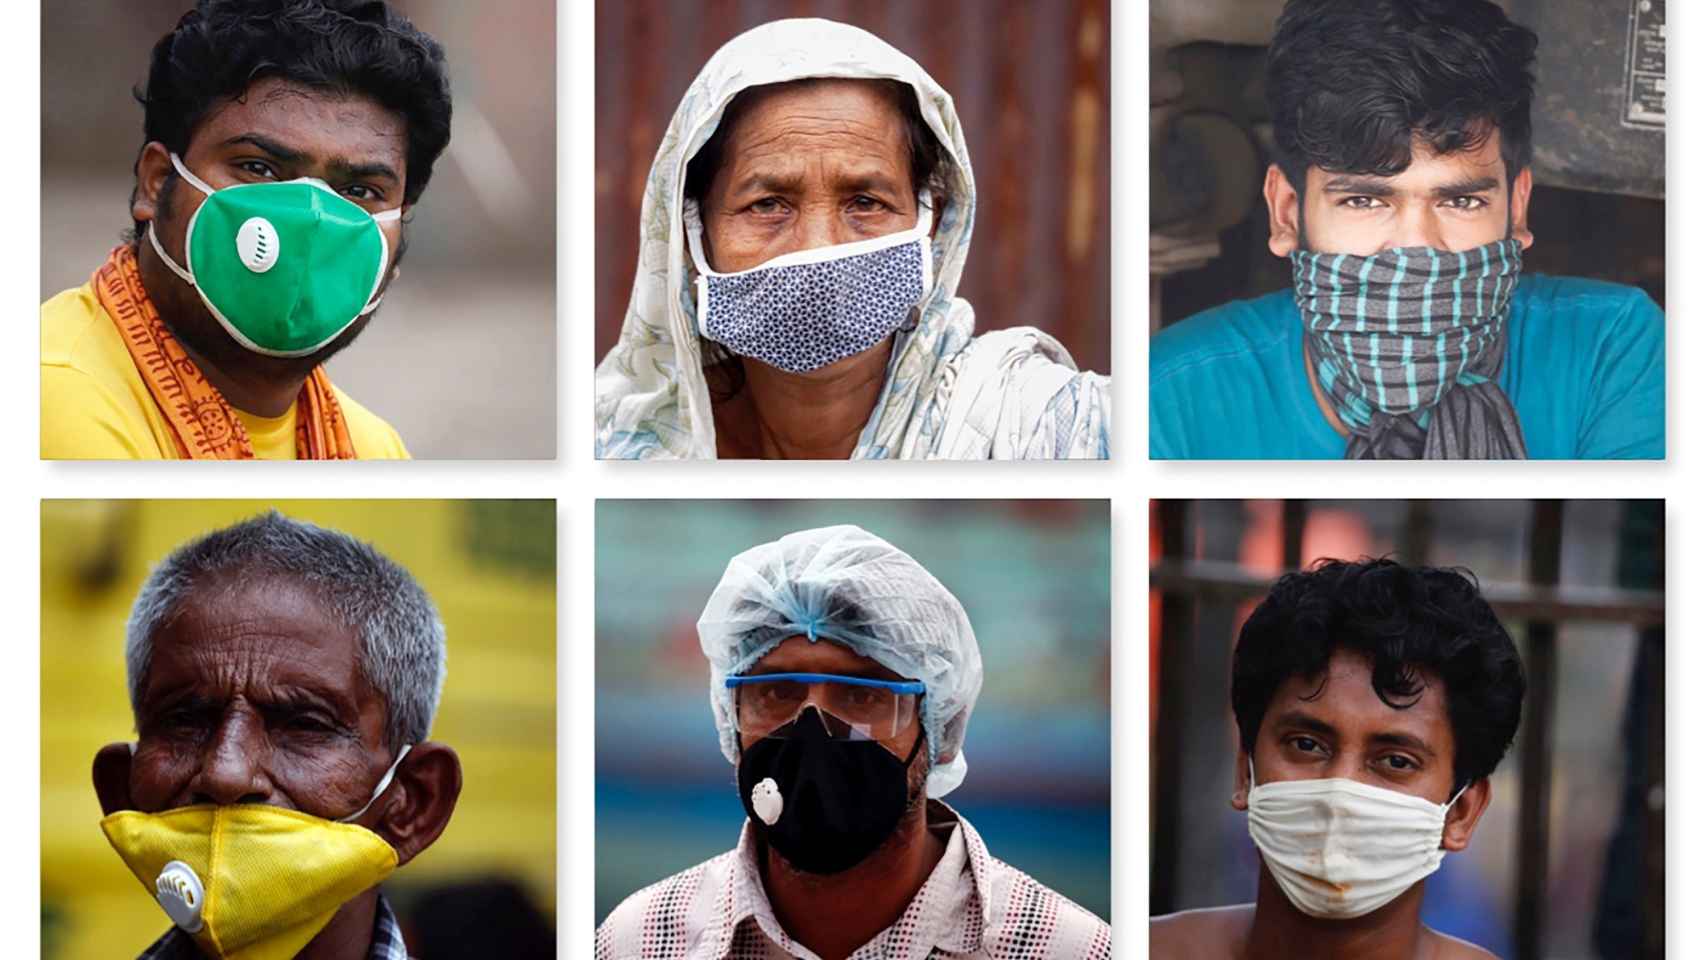 Retratos de ciudadanos de Bangladés con mascarillas para prevenir la pandemia